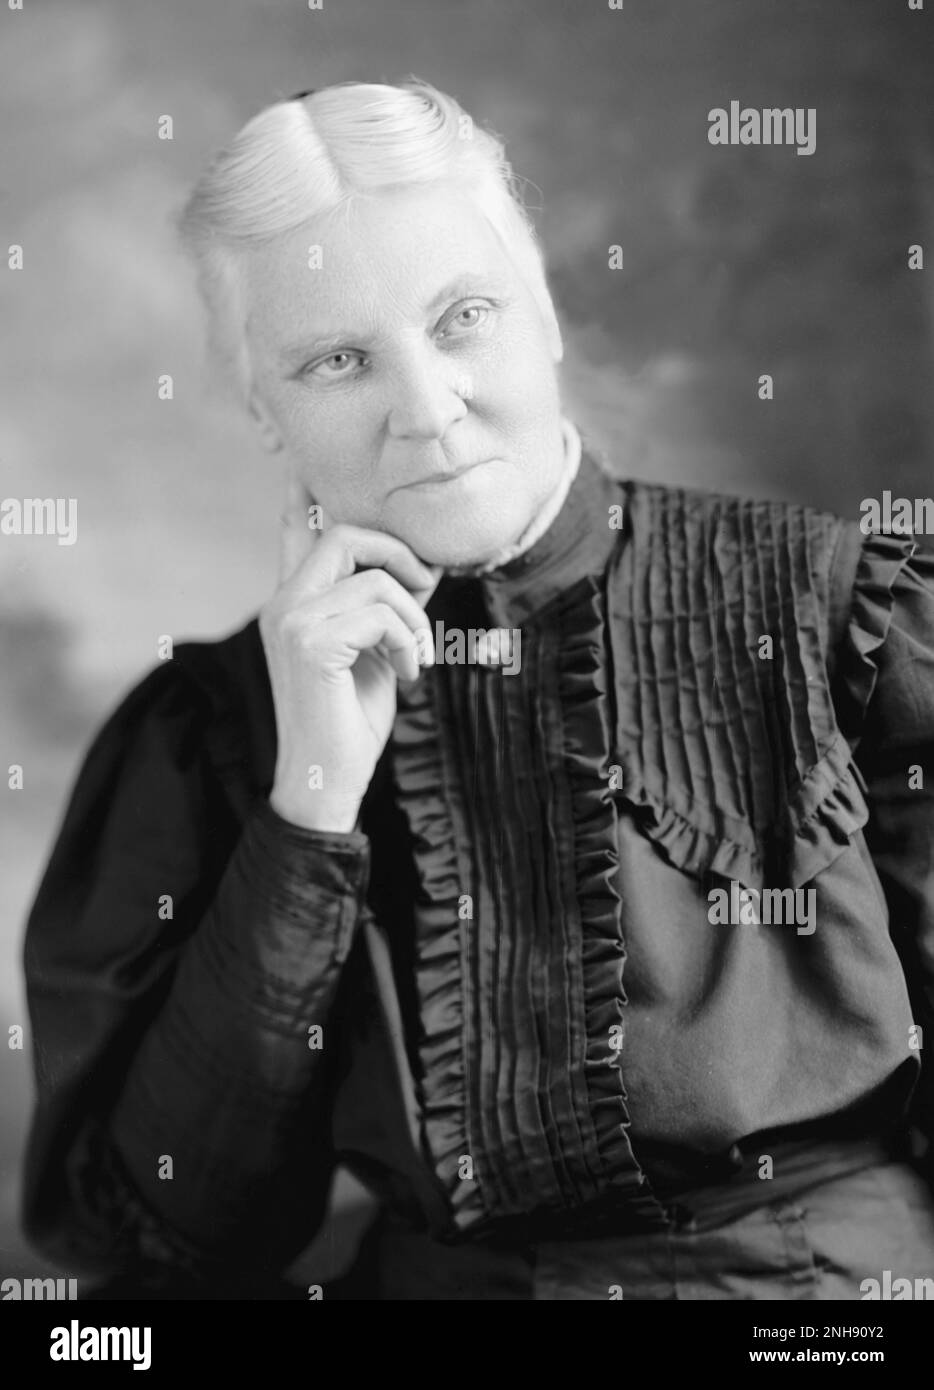 Jennie Kidd Trout (1841-1921) è stata la prima donna in Canada a diventare un medico autorizzato, il 11 marzo 1875. La trota è stata l'unica donna in Canada autorizzata a praticare medicina fino al luglio 1880, quando Emily Stowe ha completato le qualifiche ufficiali. Foto Harris & Ewing, circa 1905. Foto Stock